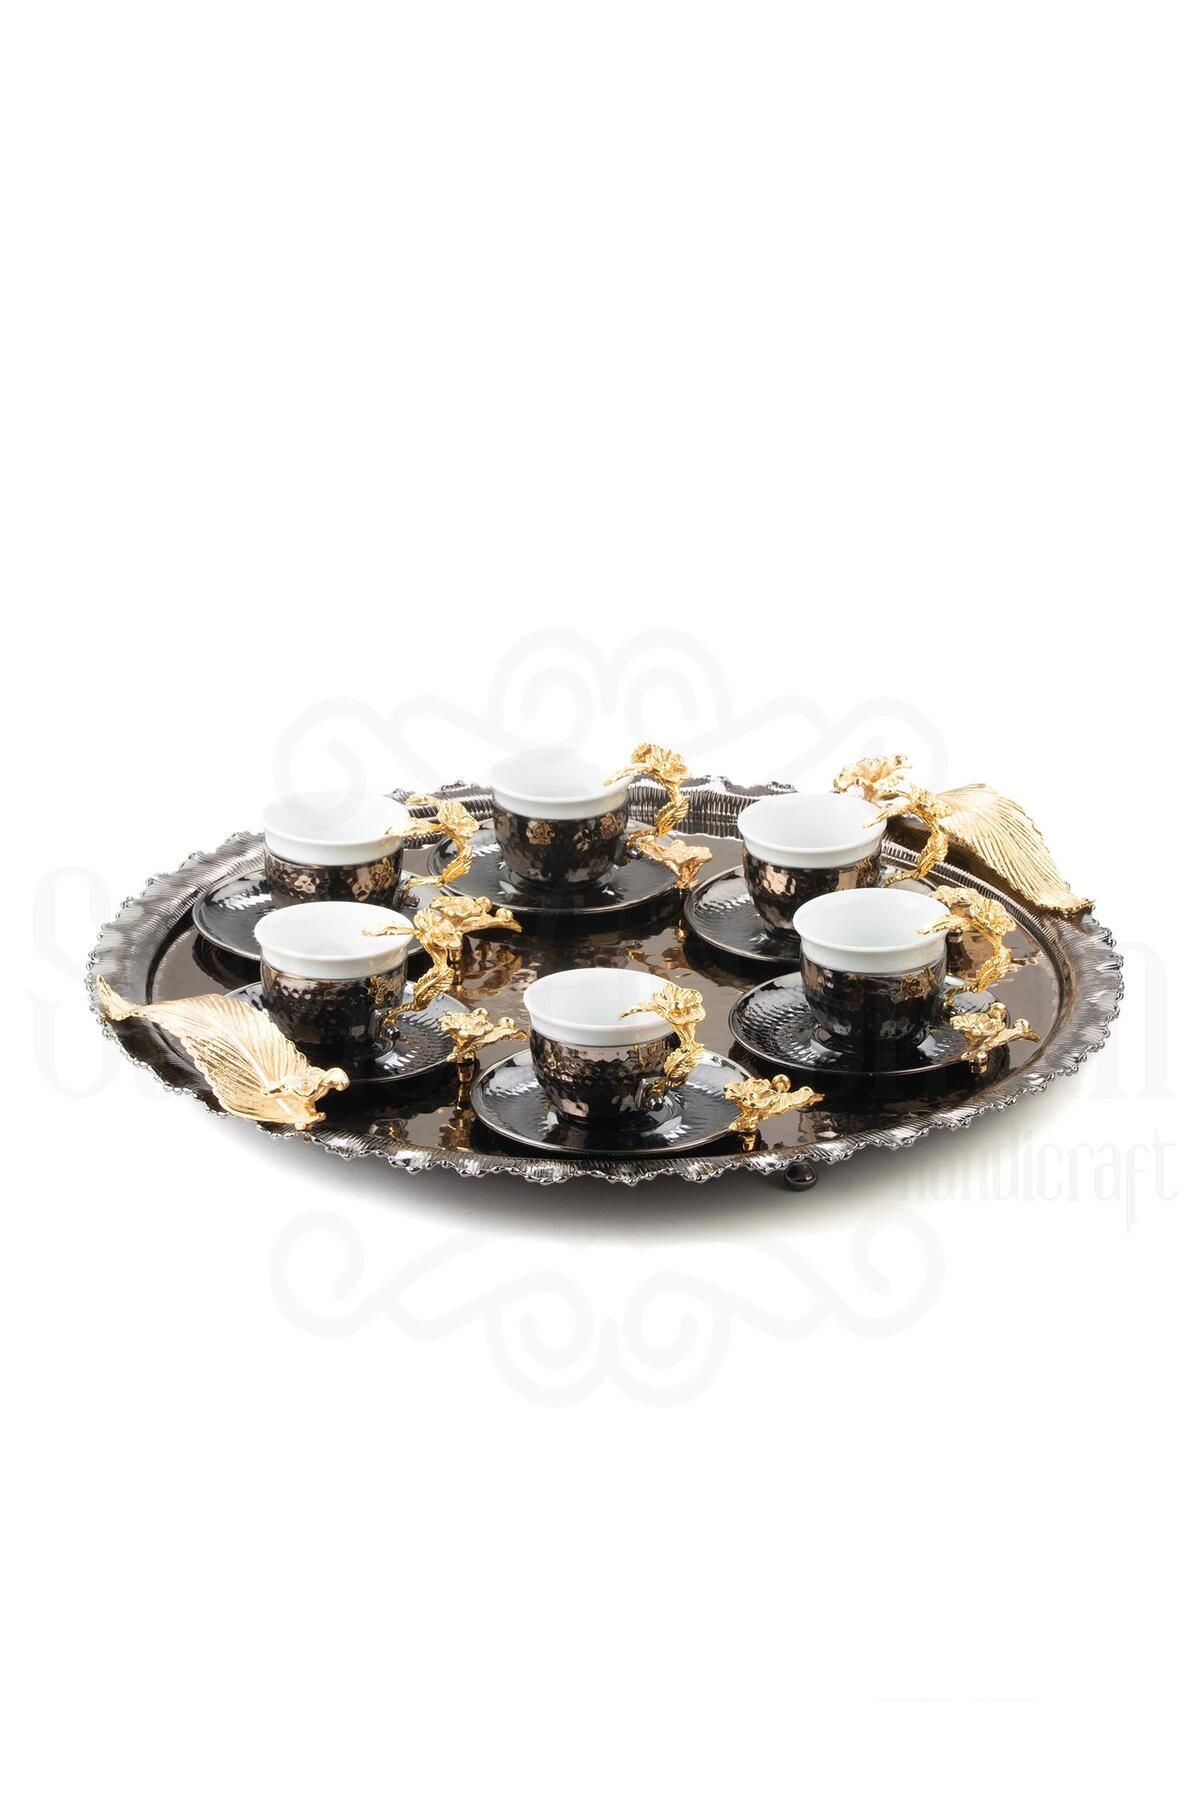 Saray Ottoman Altın Japon Gülü Yuvarlak Tepsi + 6'lı Kahve Fincanı Siyah